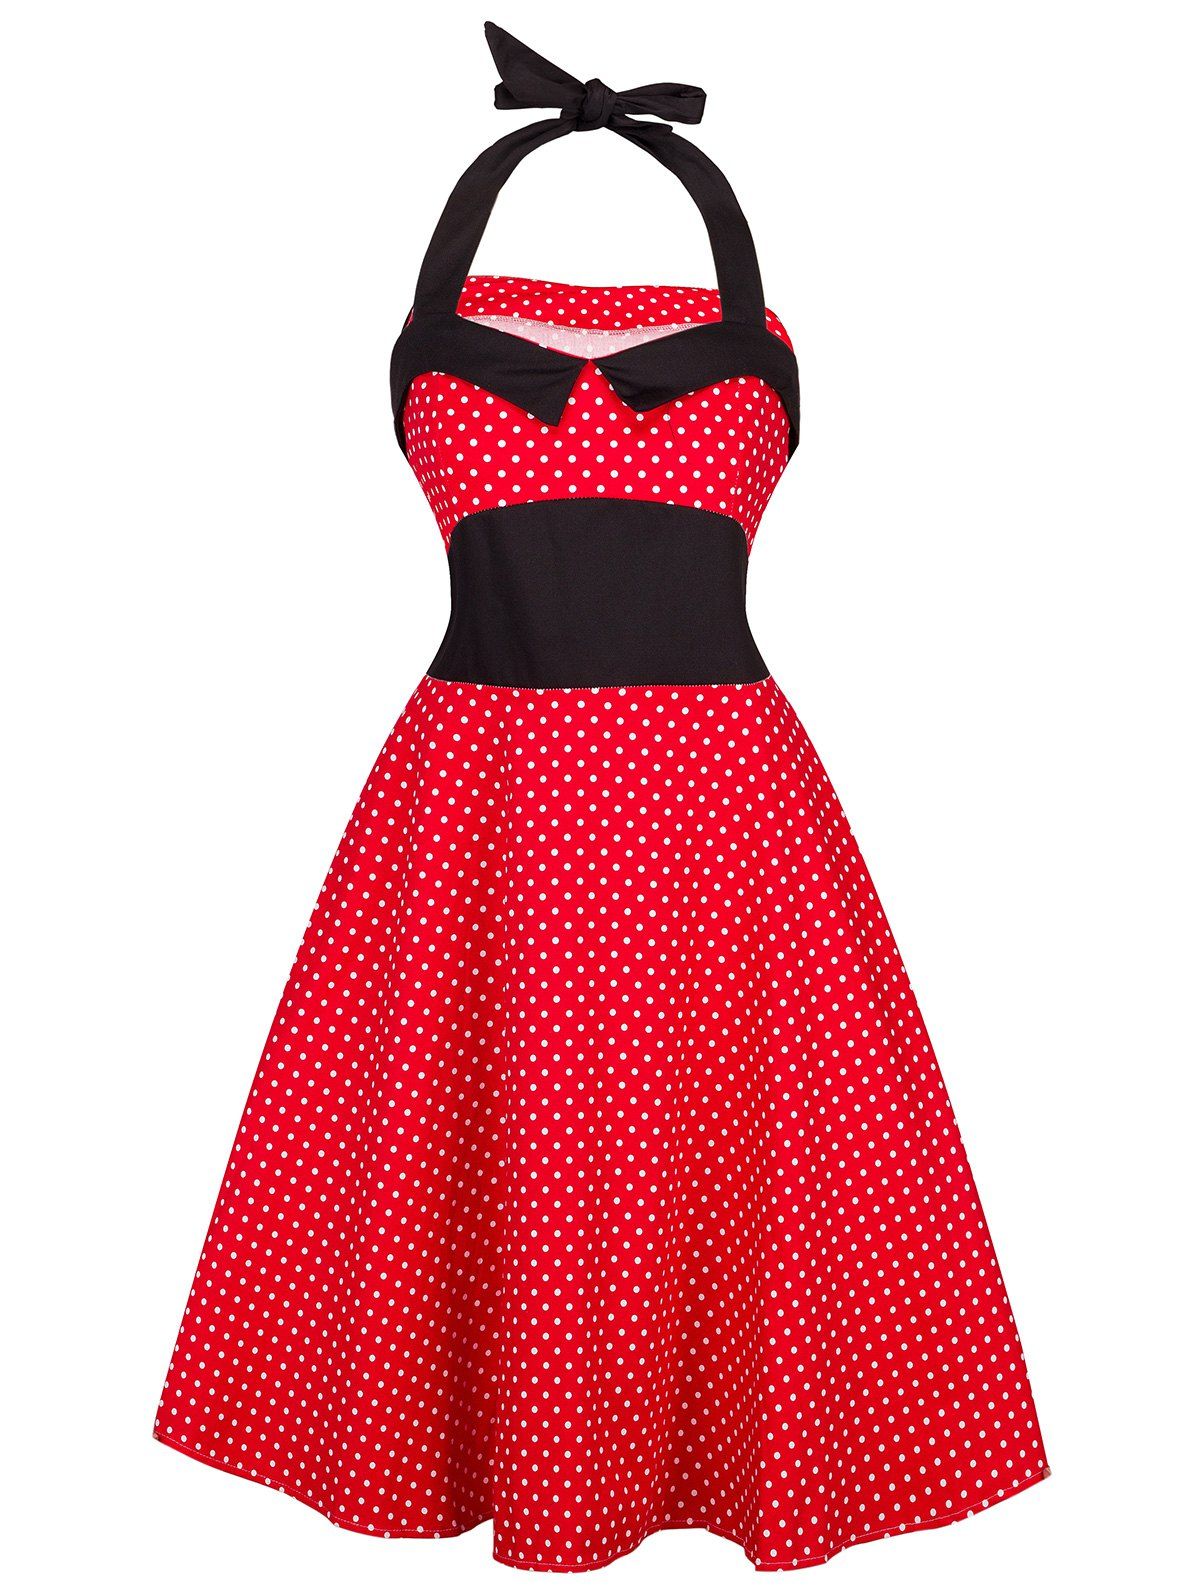 [17% OFF] 2021 Vintage Halter Polka Dot Shirred Dress In RED | DressLily